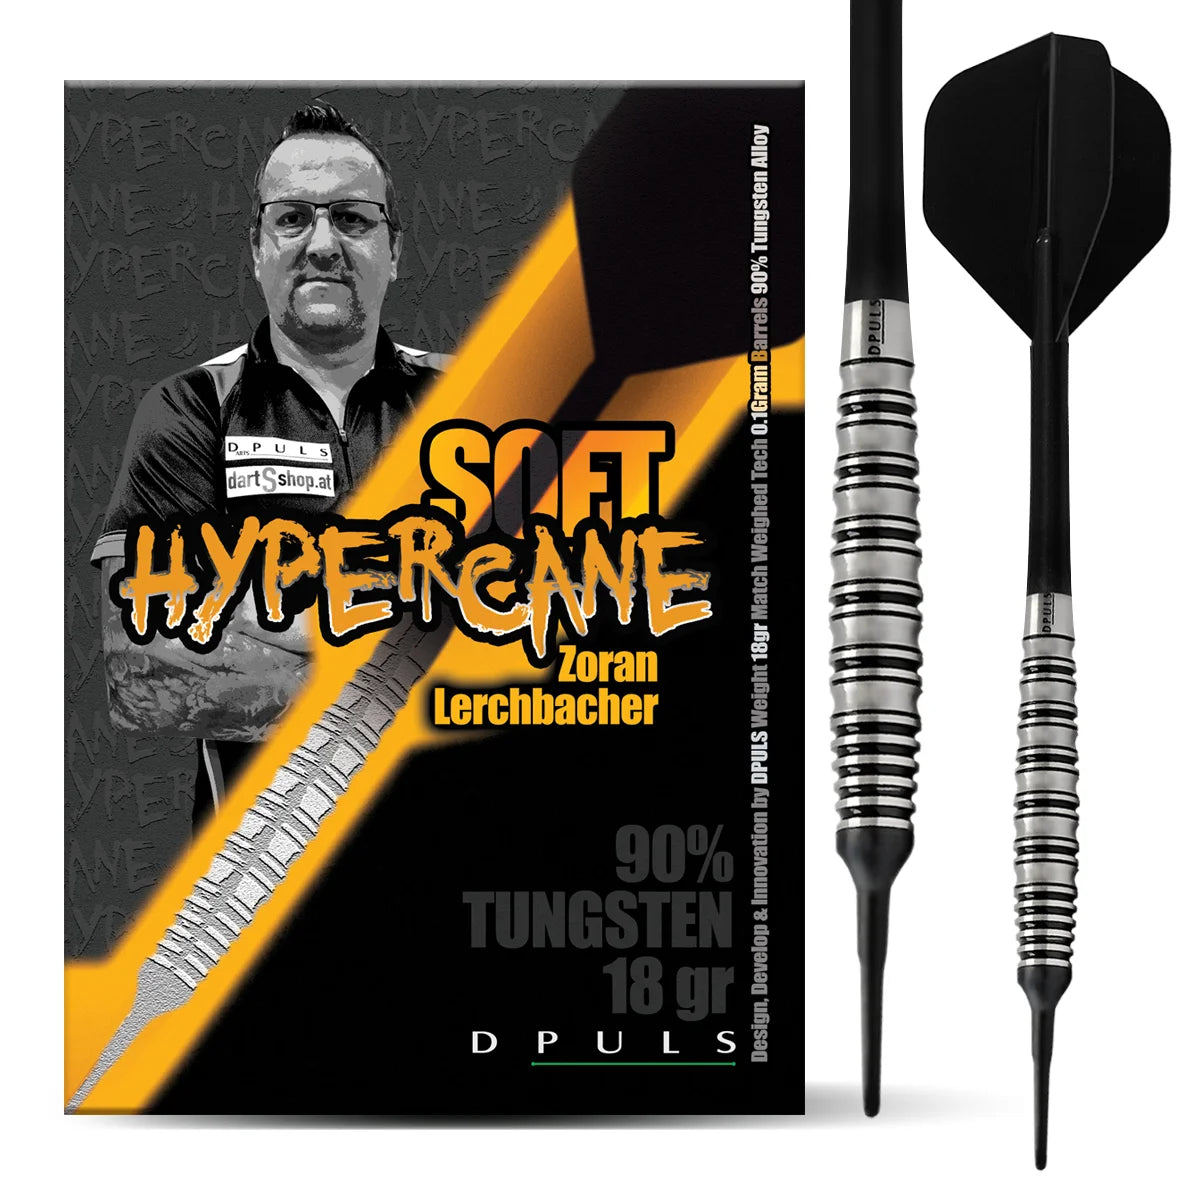 DPULS Zoran" The Hypercane" Lerchbacher Z1 Soft Dart 20g/90%